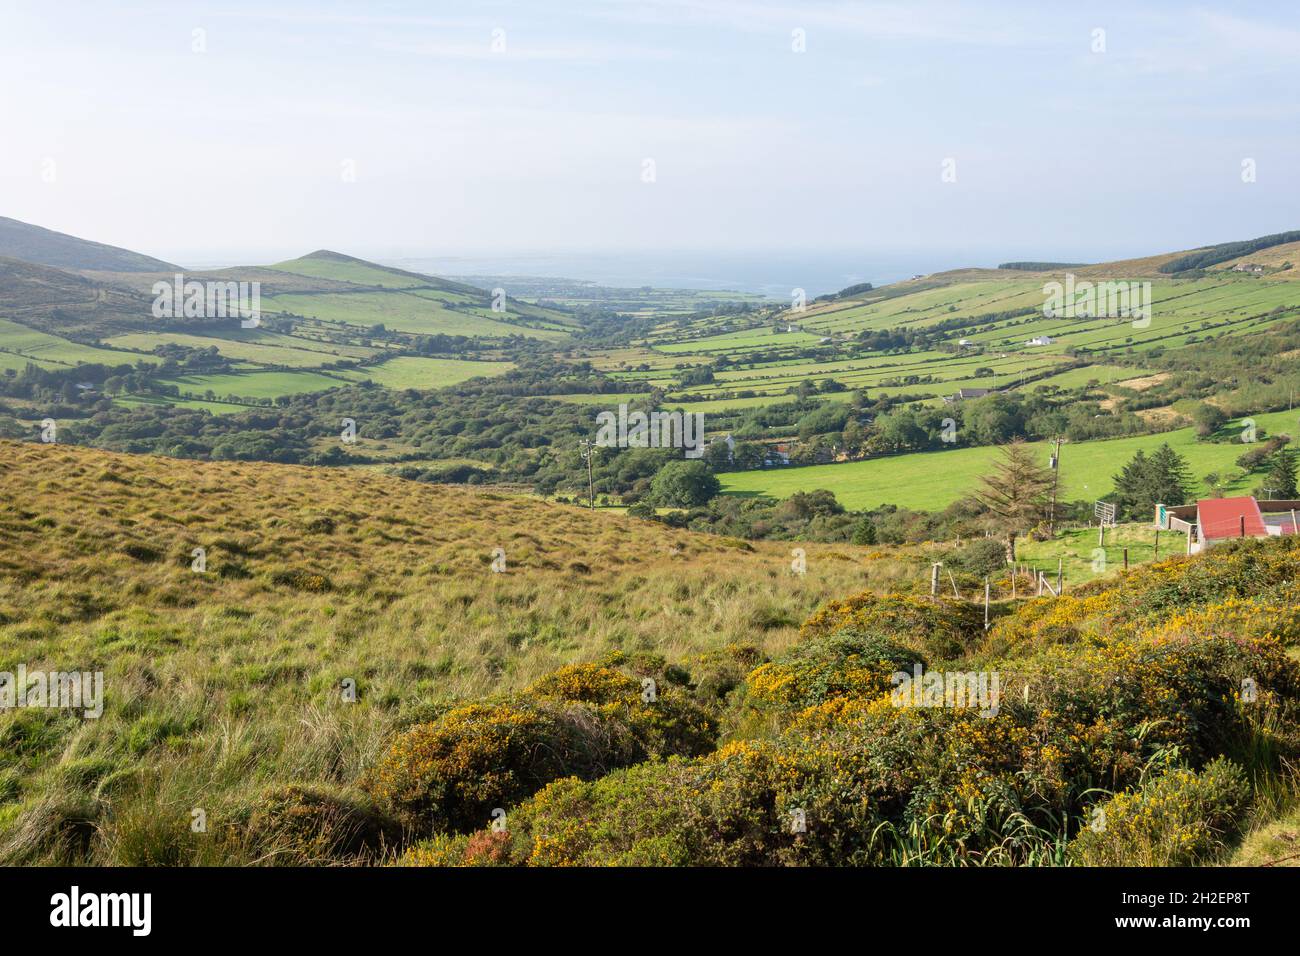 Vista panorámica del campo y la costa, Península de Dingle (Corca Dhuibhne), Condado de Kerry, República de Irlanda Foto de stock